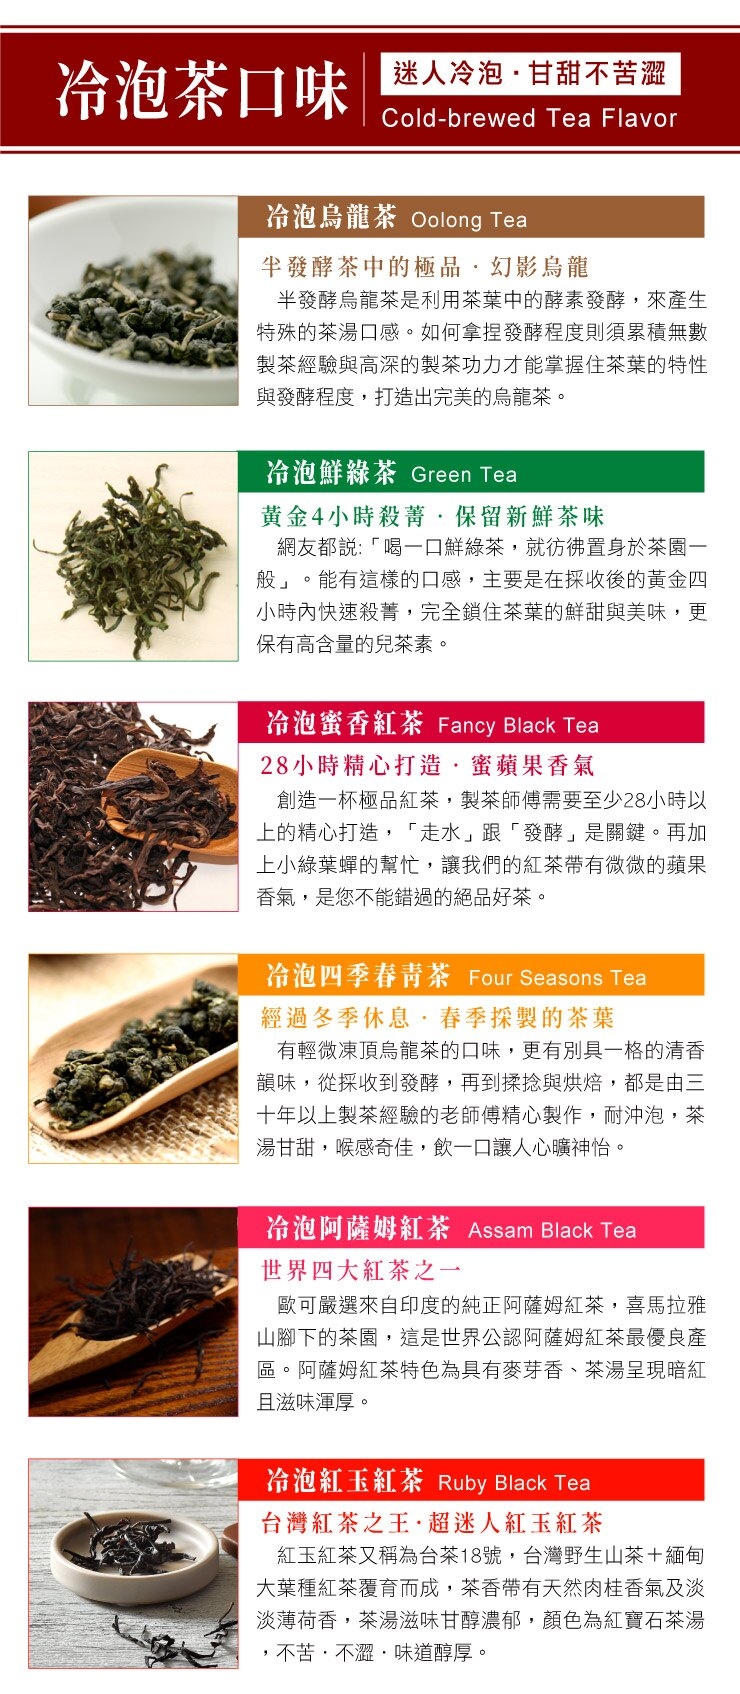 歐可茶葉 冷泡茶-鮮綠茶(3gx30入)